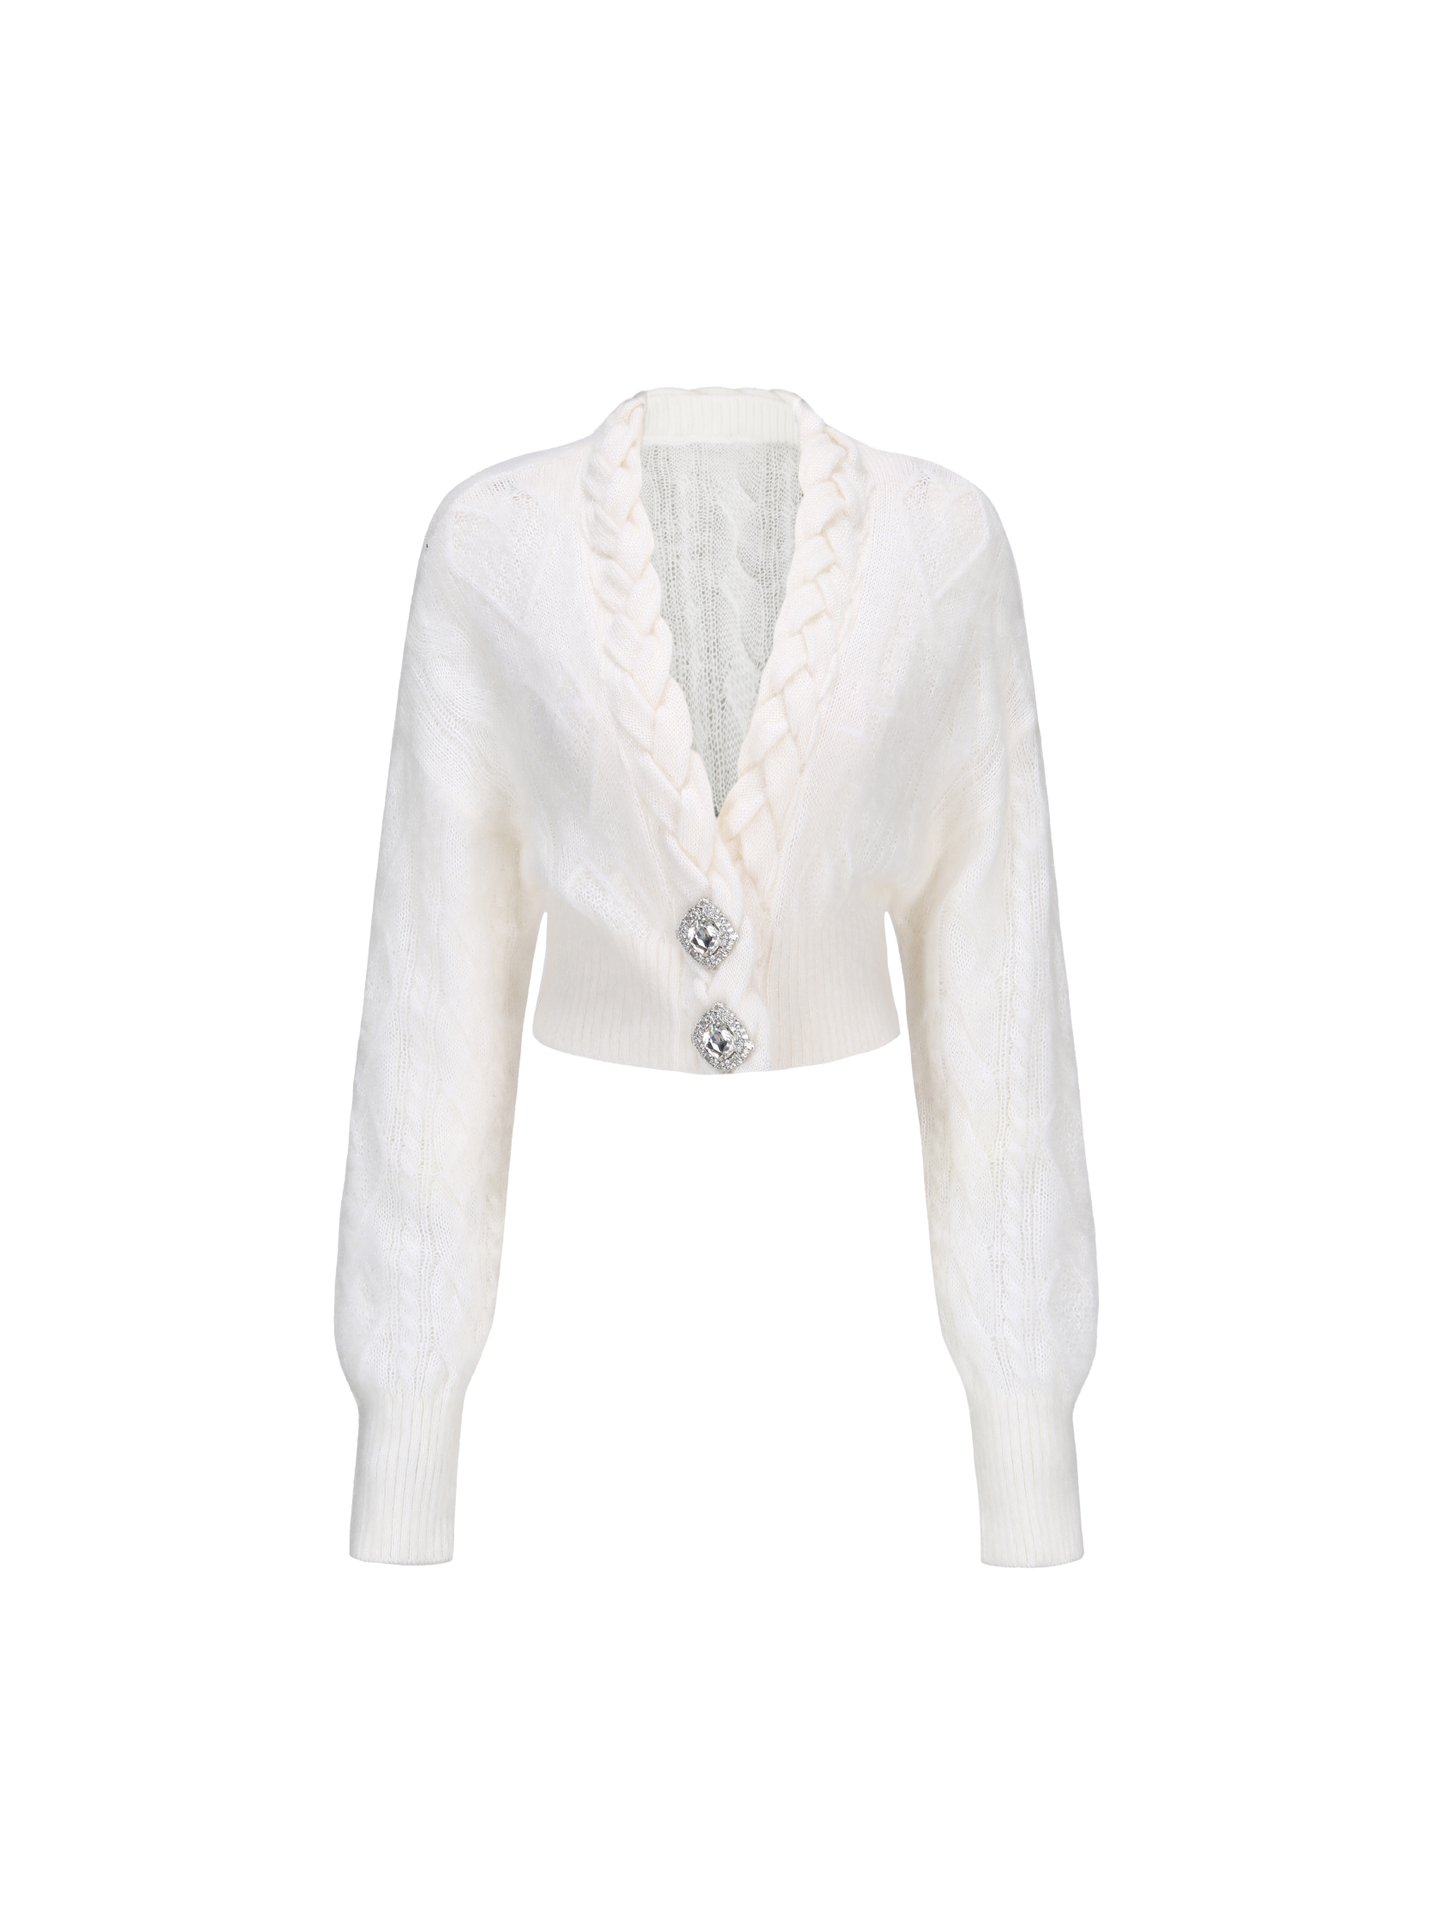 Carmen Diamond Knit Sweater (White) (Final Sale)